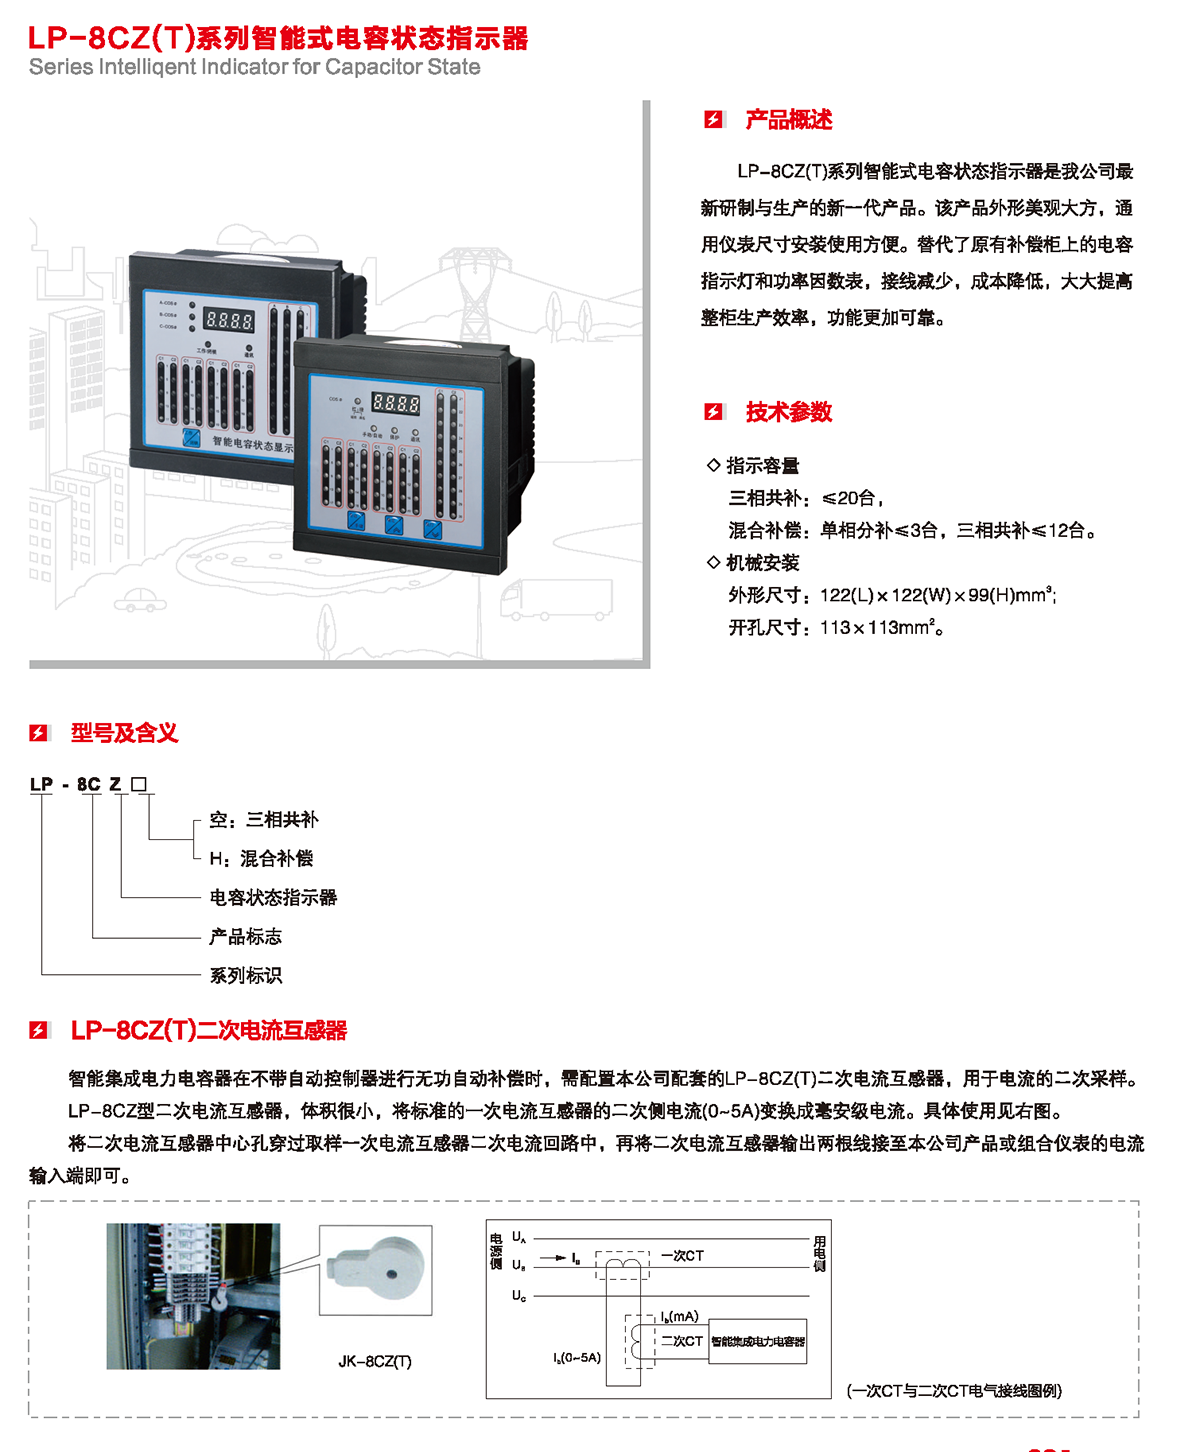 LP-8CZ（T）系列智能式电容状态指示器产品详情